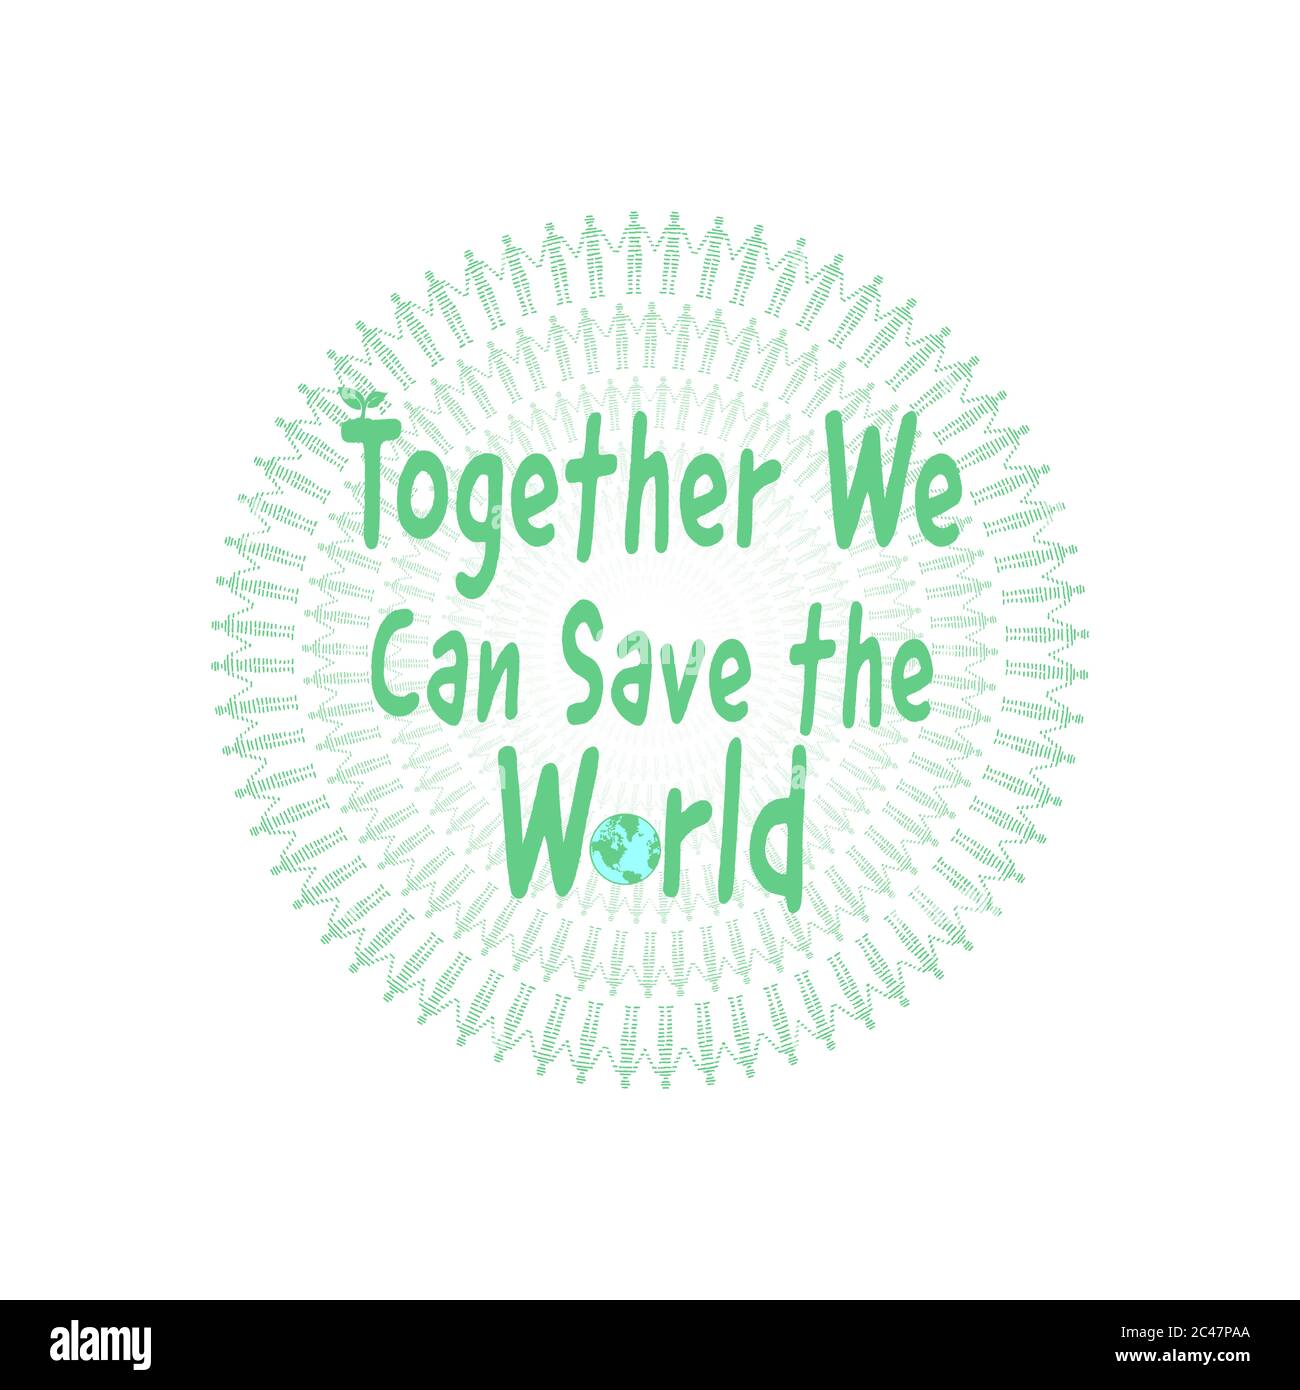 Ensemble, nous pouvons sauver le texte du monde avec des figures debout à la main, communauté environnementale jointe à la protestation et de travailler ensemble pour les environnementalistes Banque D'Images